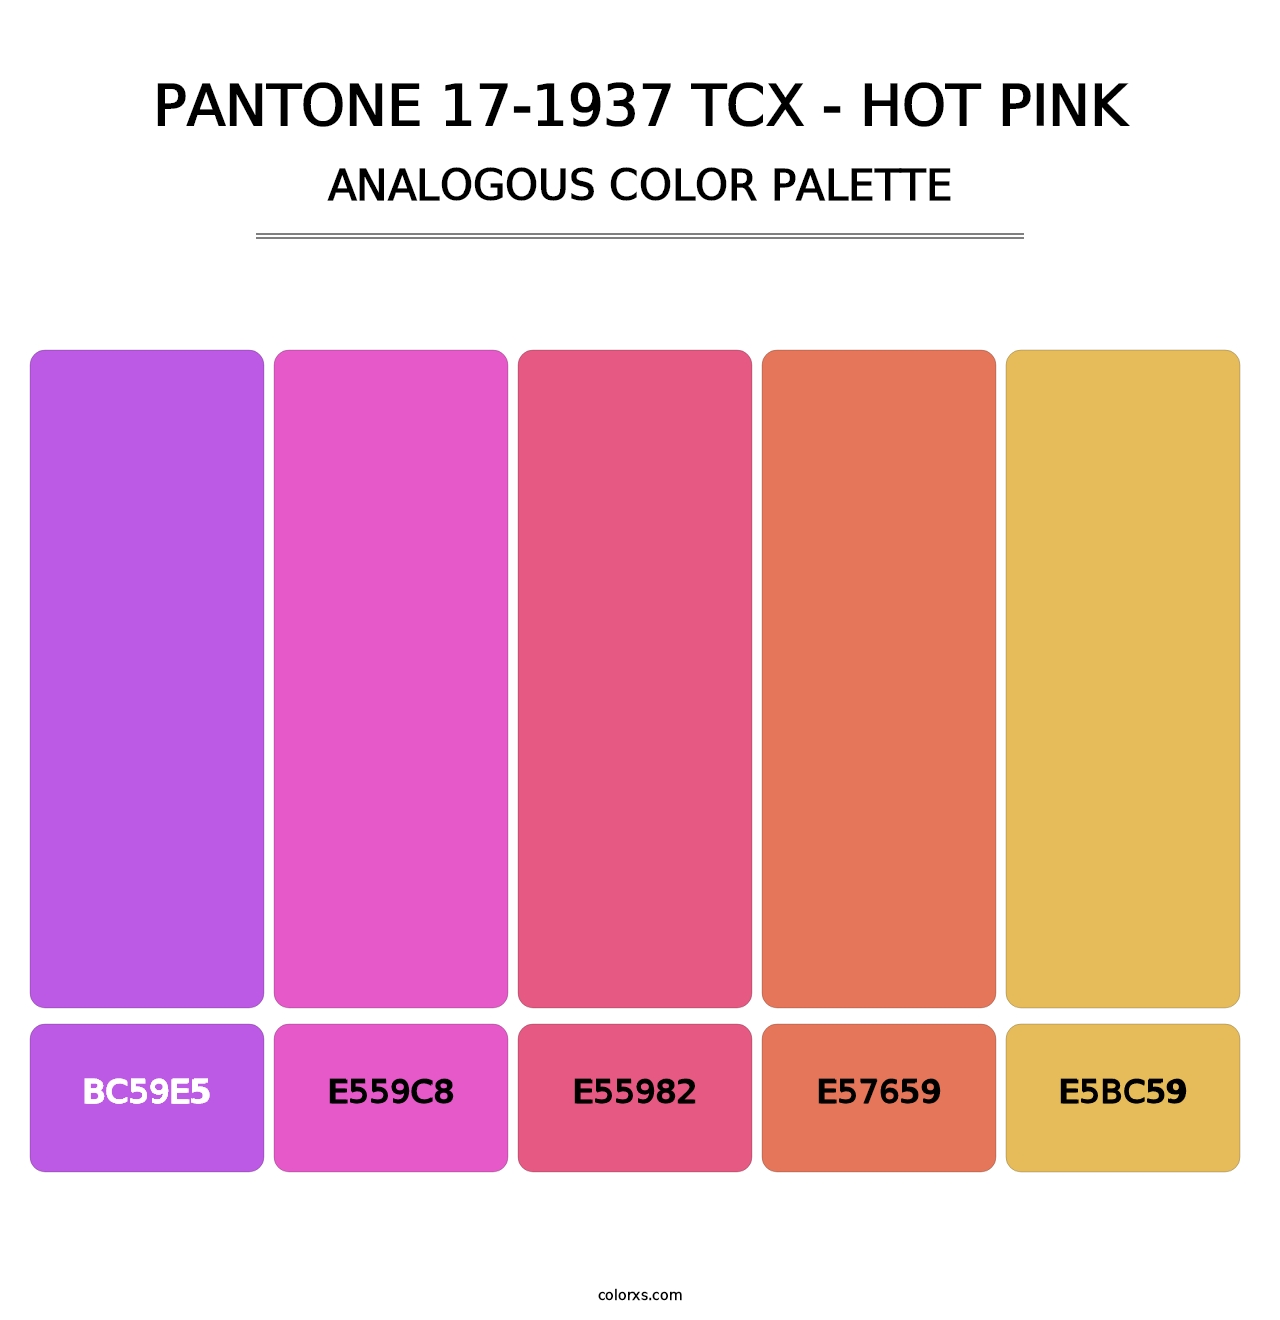 PANTONE 17-1937 TCX - Hot Pink - Analogous Color Palette